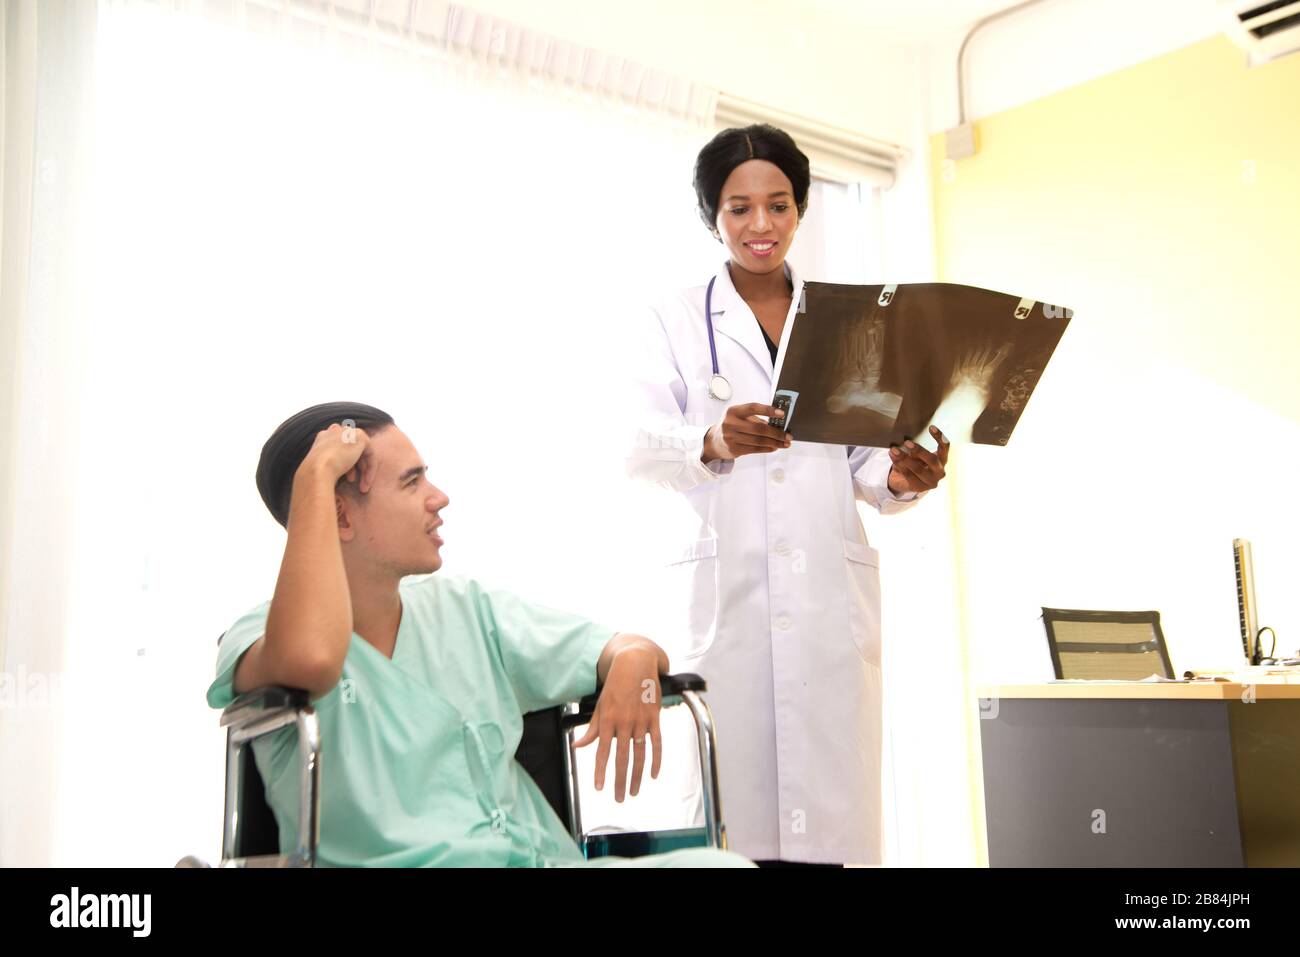 Ein männlicher Patient saß wegen Kopfschmerzen auf dem Rollstuhl. Im Krankenhaus behandelt und von einem Arzt überwacht. Stockfoto